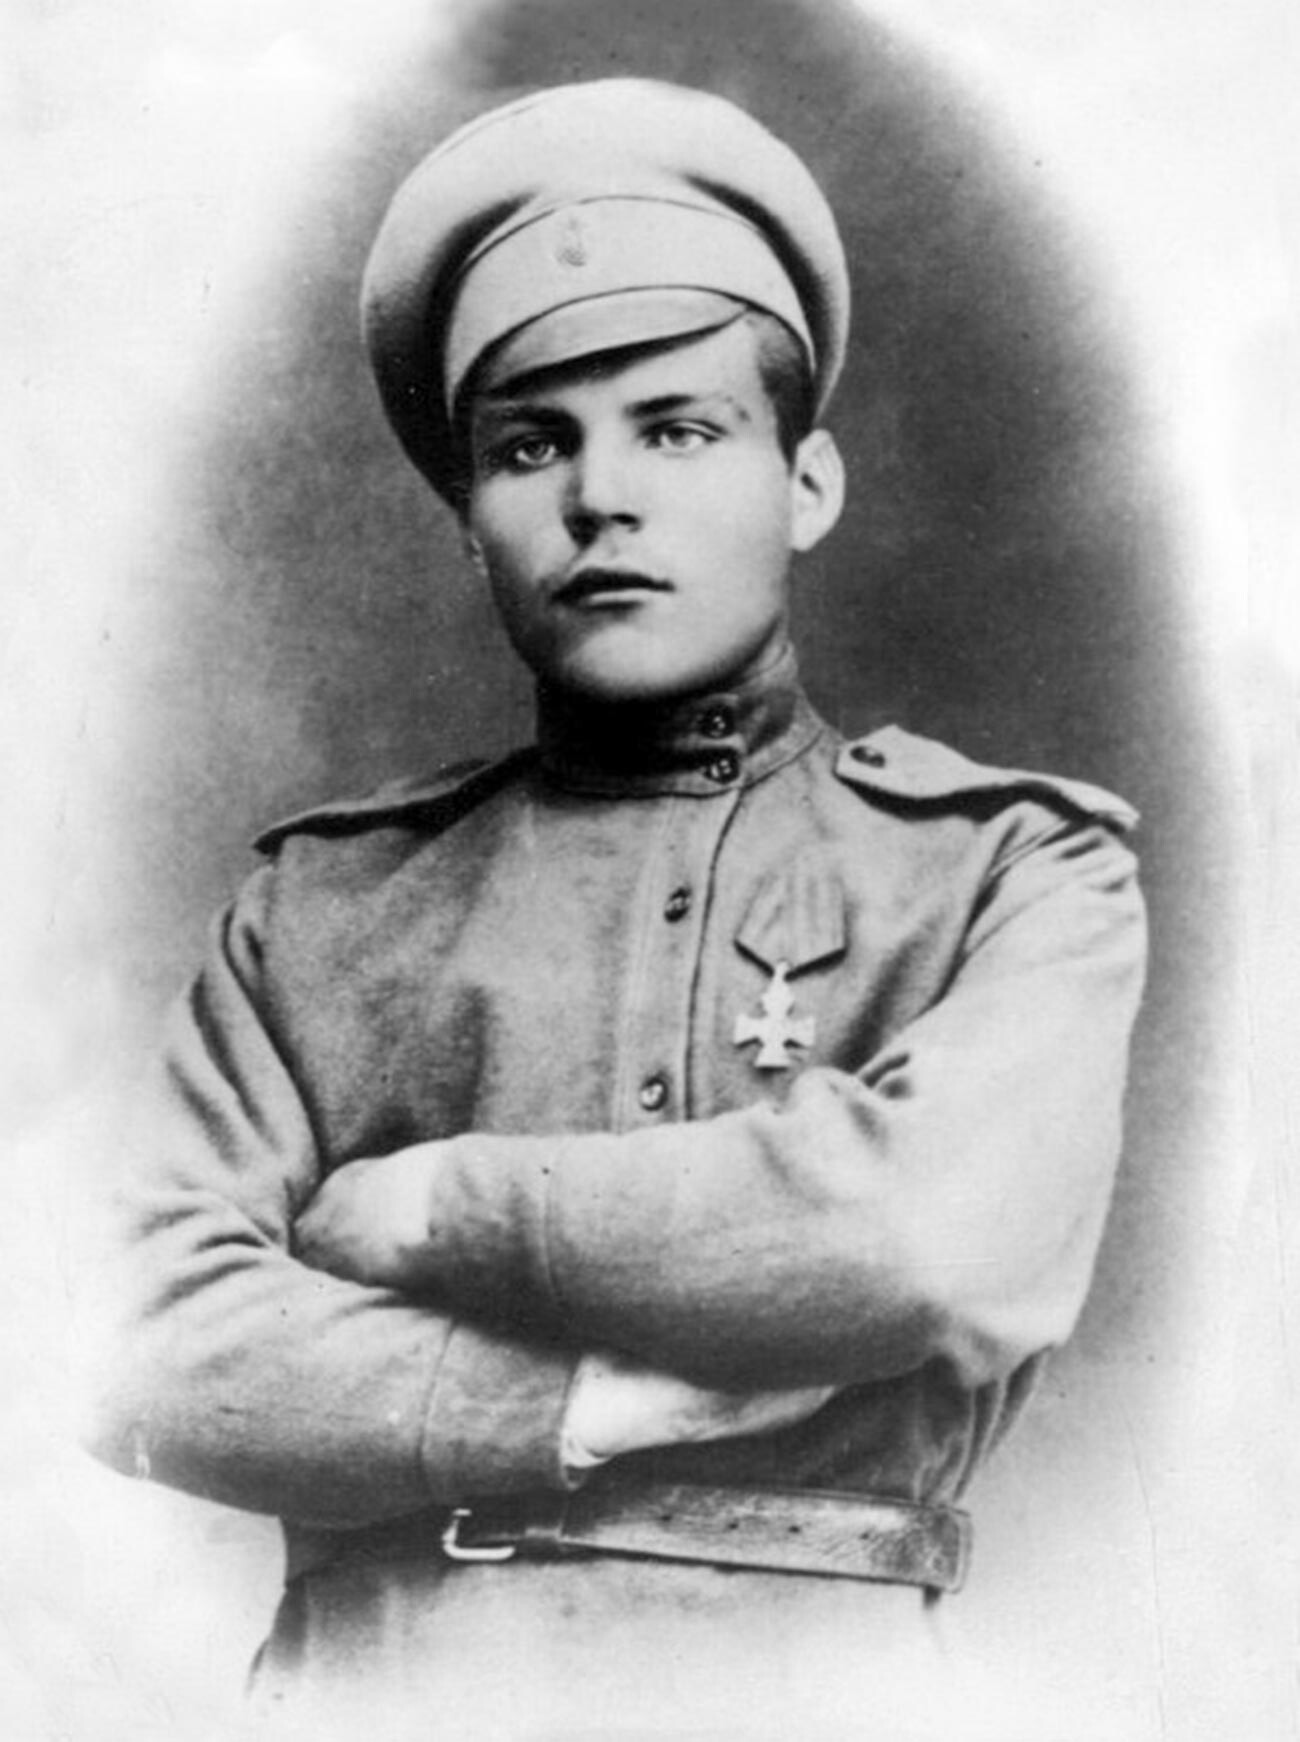 Mariscal de la Unión Soviética Rodión Malinovski durante o antes de la Primera Guerra Mundial